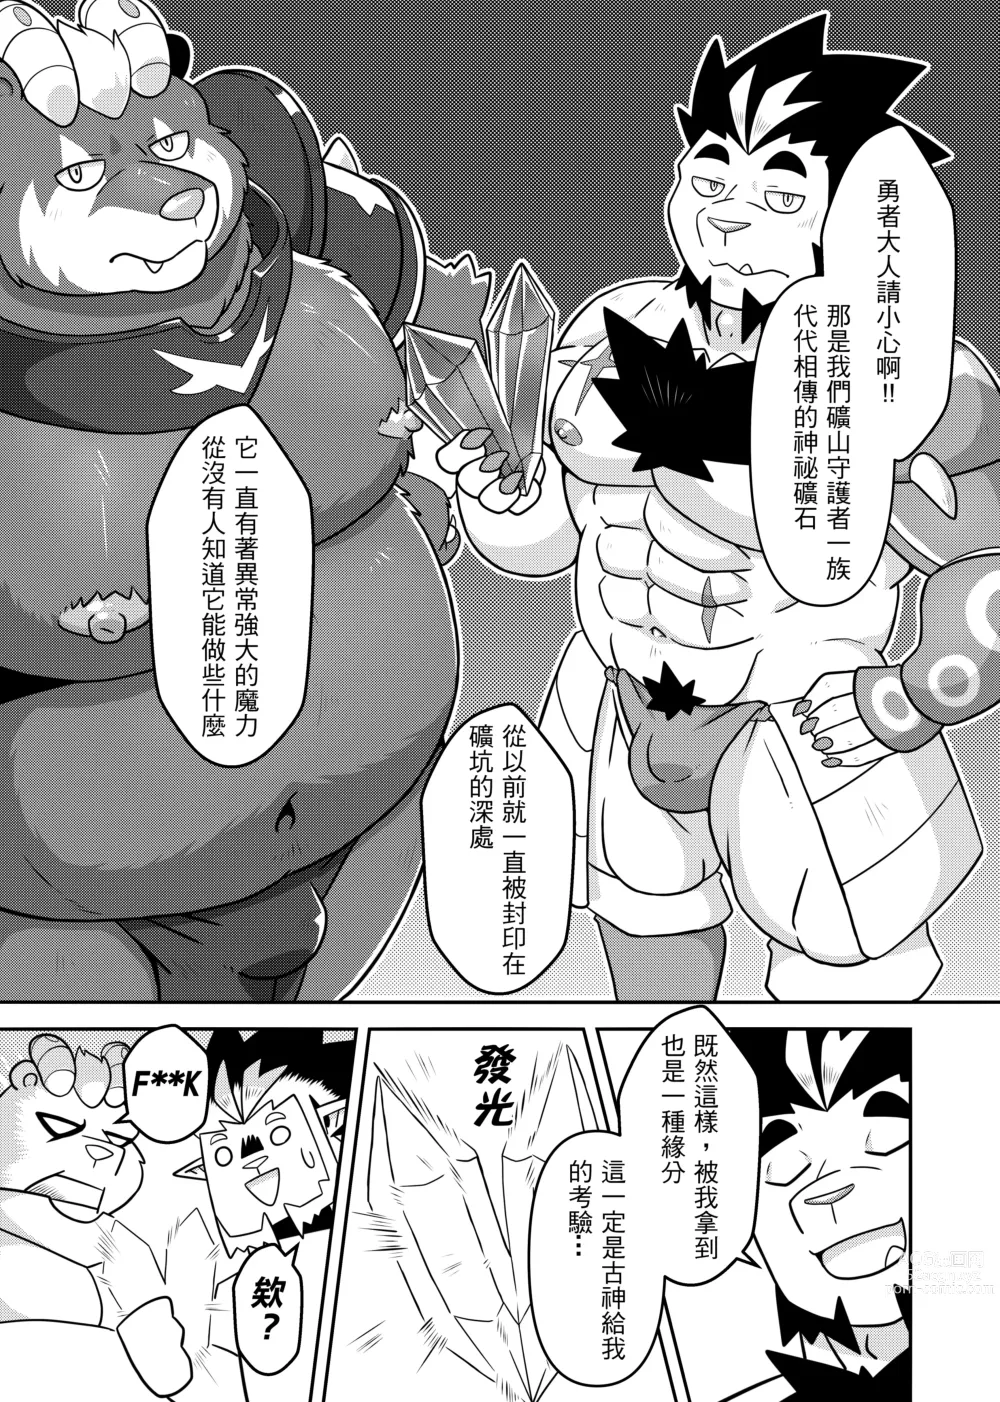 Page 7 of doujinshi 勇者的大小只有魔王塞得下3